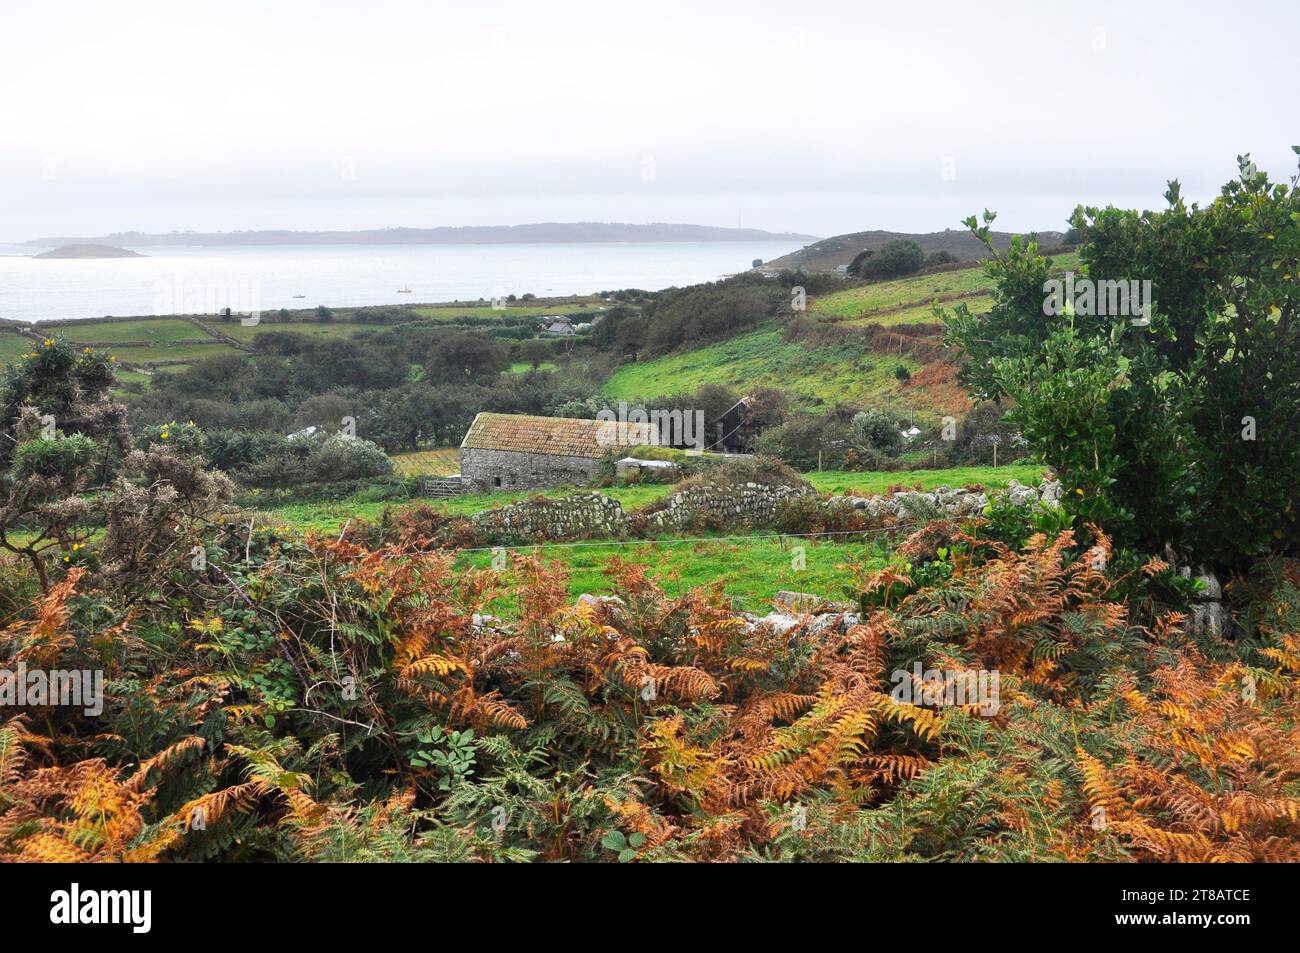 La paix et la tranquillité capturées par le calme paysage automnal de l'île de St Martins dans les îles Scilly. Les petits champs bordés par la pierre sèche W Banque D'Images